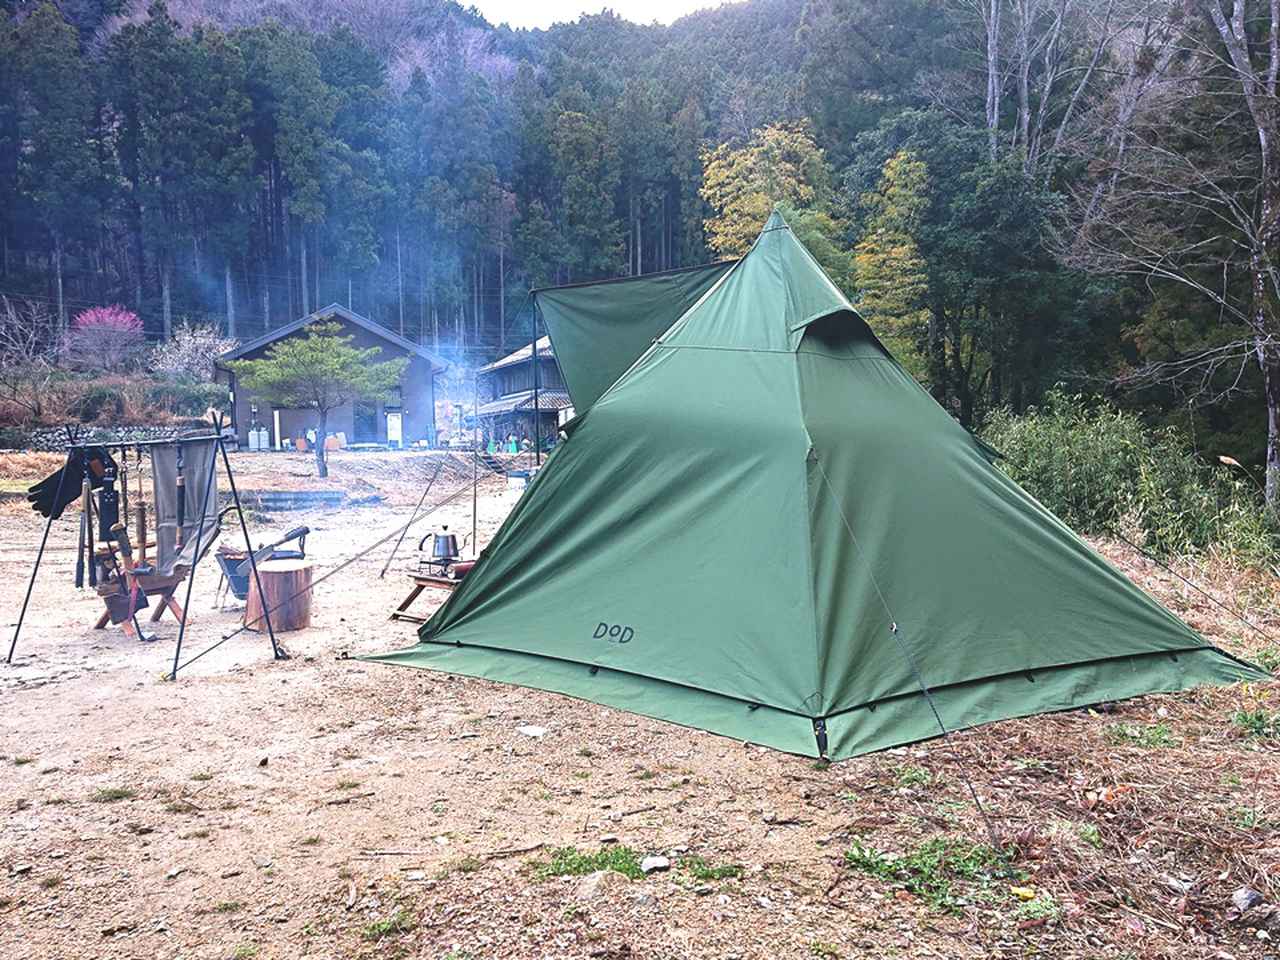 DODワンポール式『ムシャテント』でソロキャンプ向けテント選びの